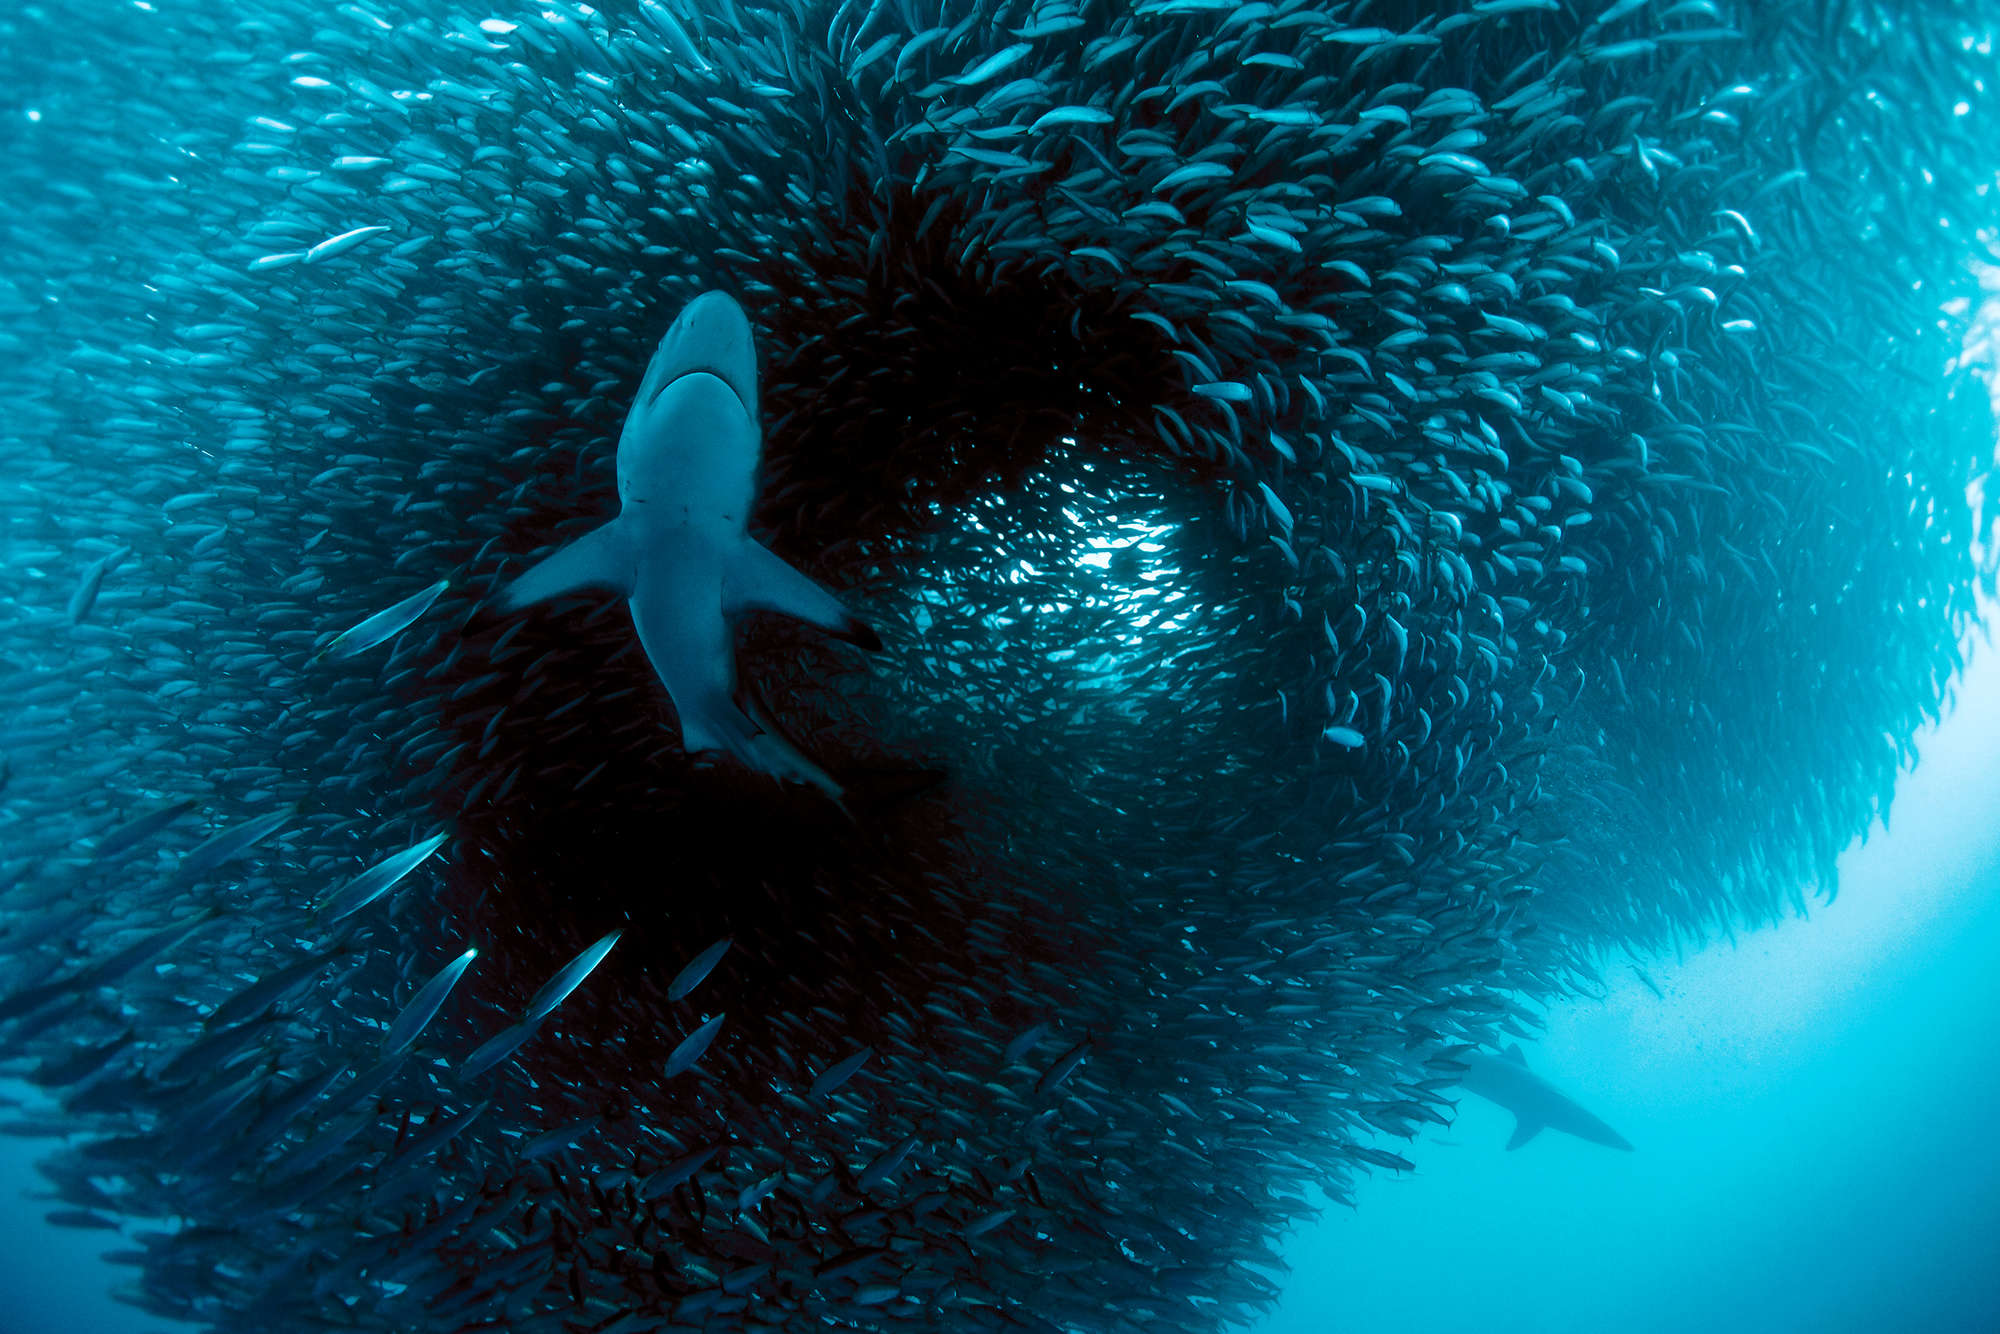             Meeres Fototapete mit Hai beim jagen auf Perlmutt Glattvlies
        